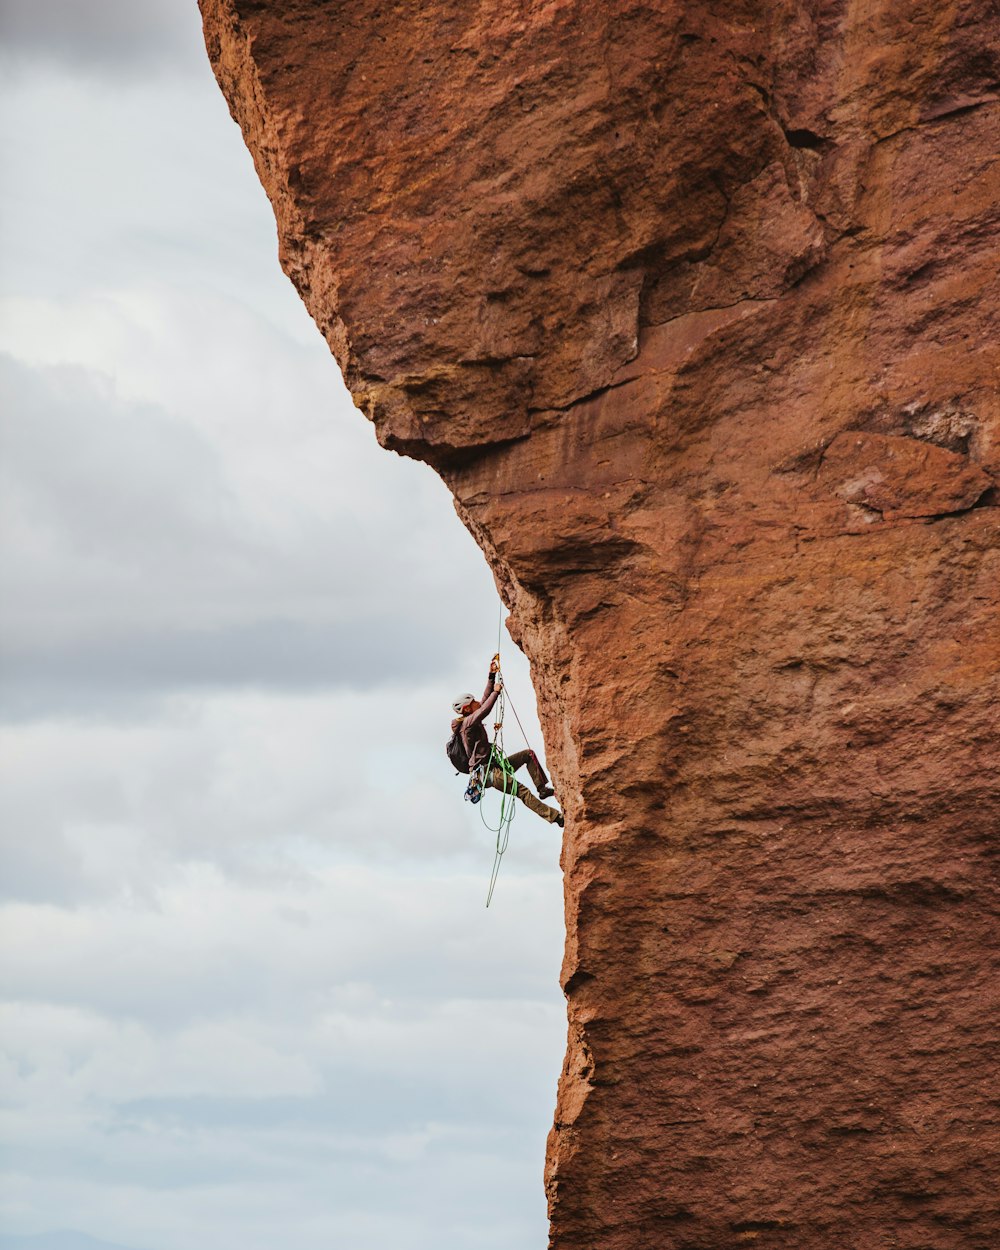 homem de calções pretos escalando a formação rochosa marrom durante o dia